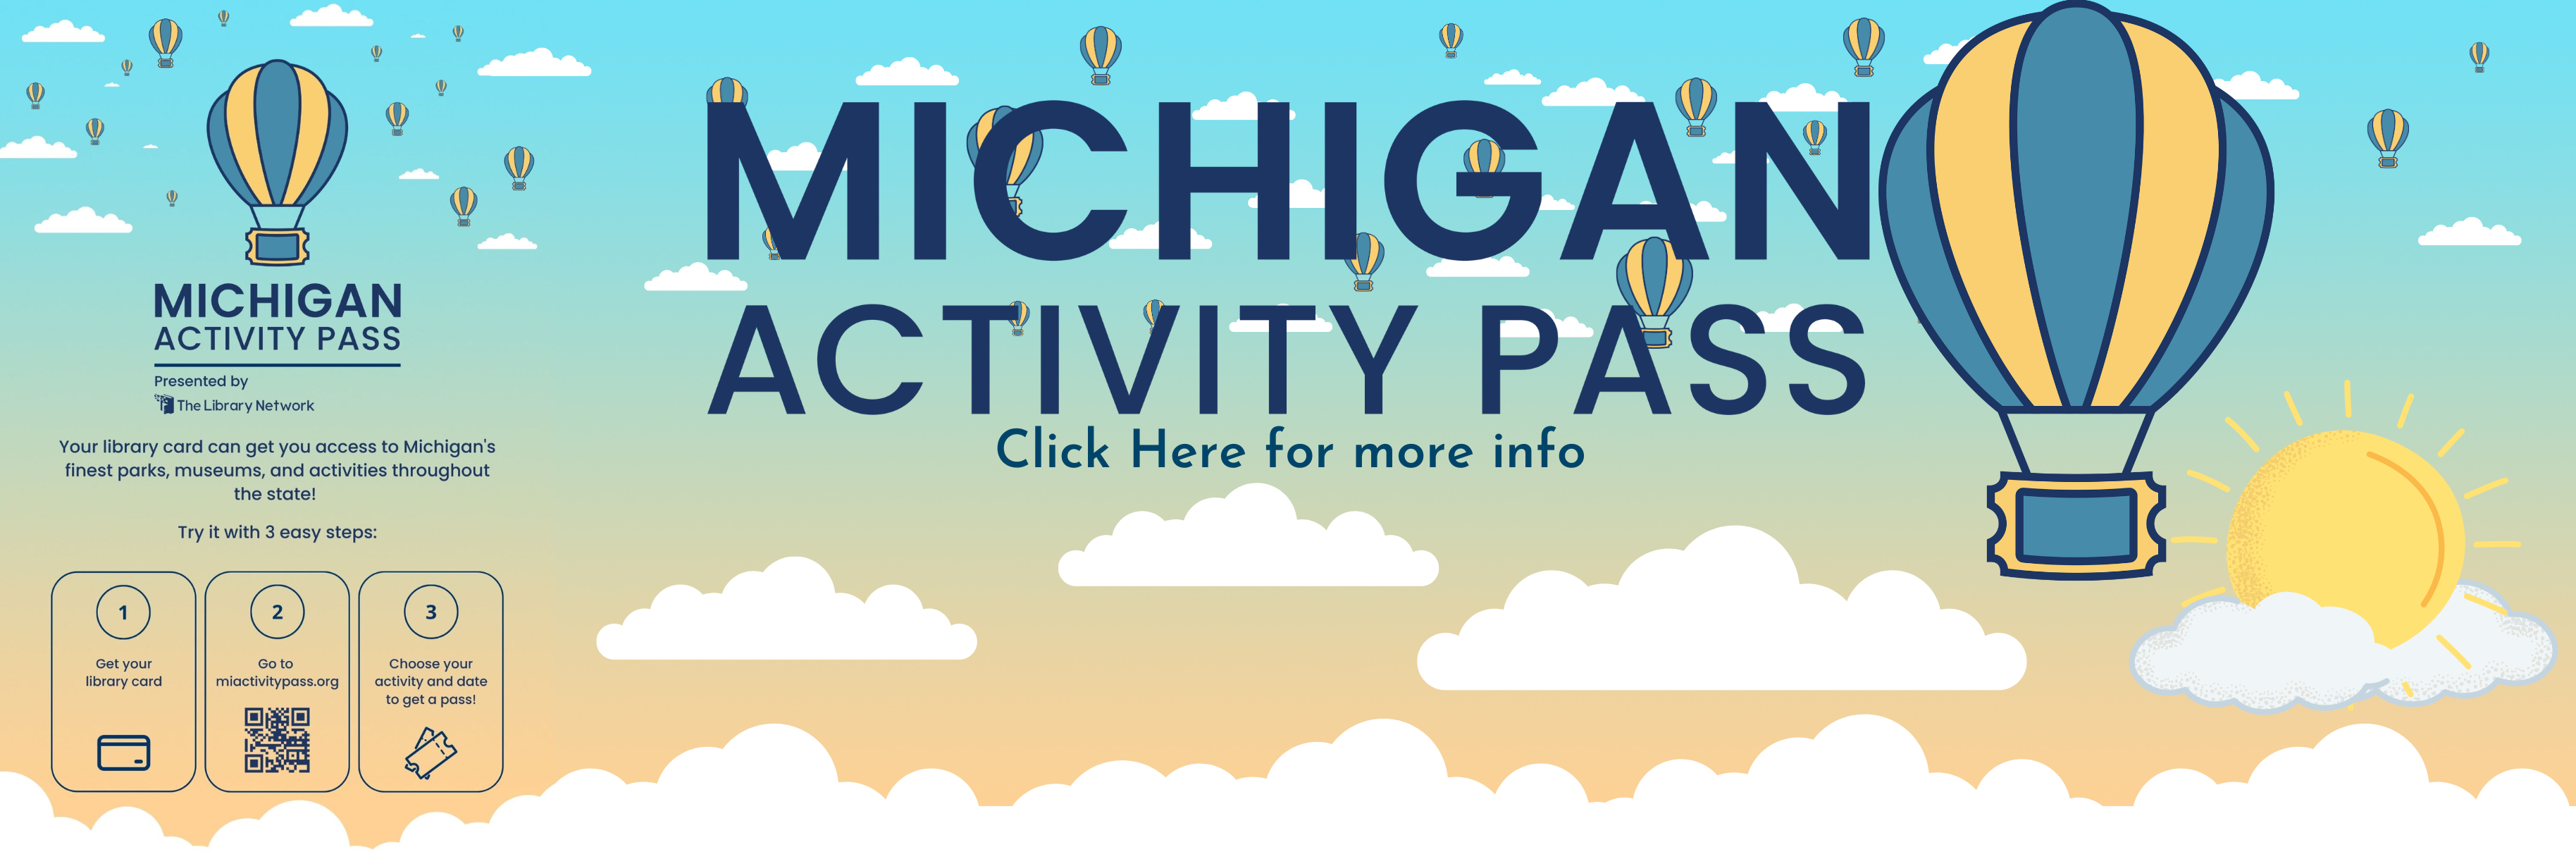 Michigan Activity Pass Slide